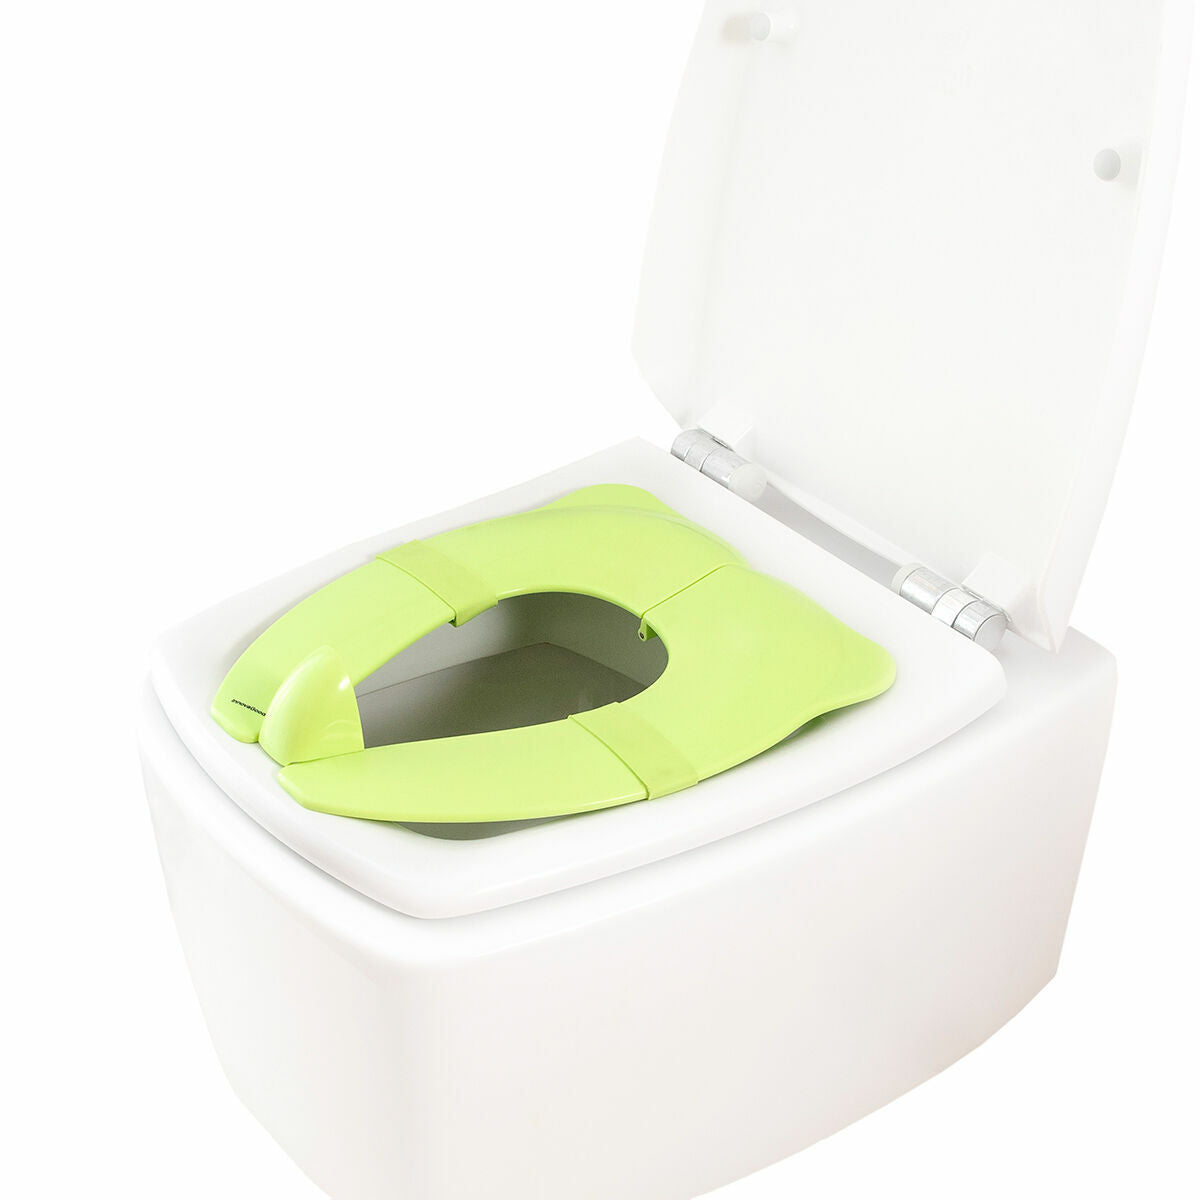 Reductor wc niños FUNNY FARM Keeeper adaptador wc niños para reducir el  asiento del wc de plastico SIN BPA de Funny Farm - AliExpress